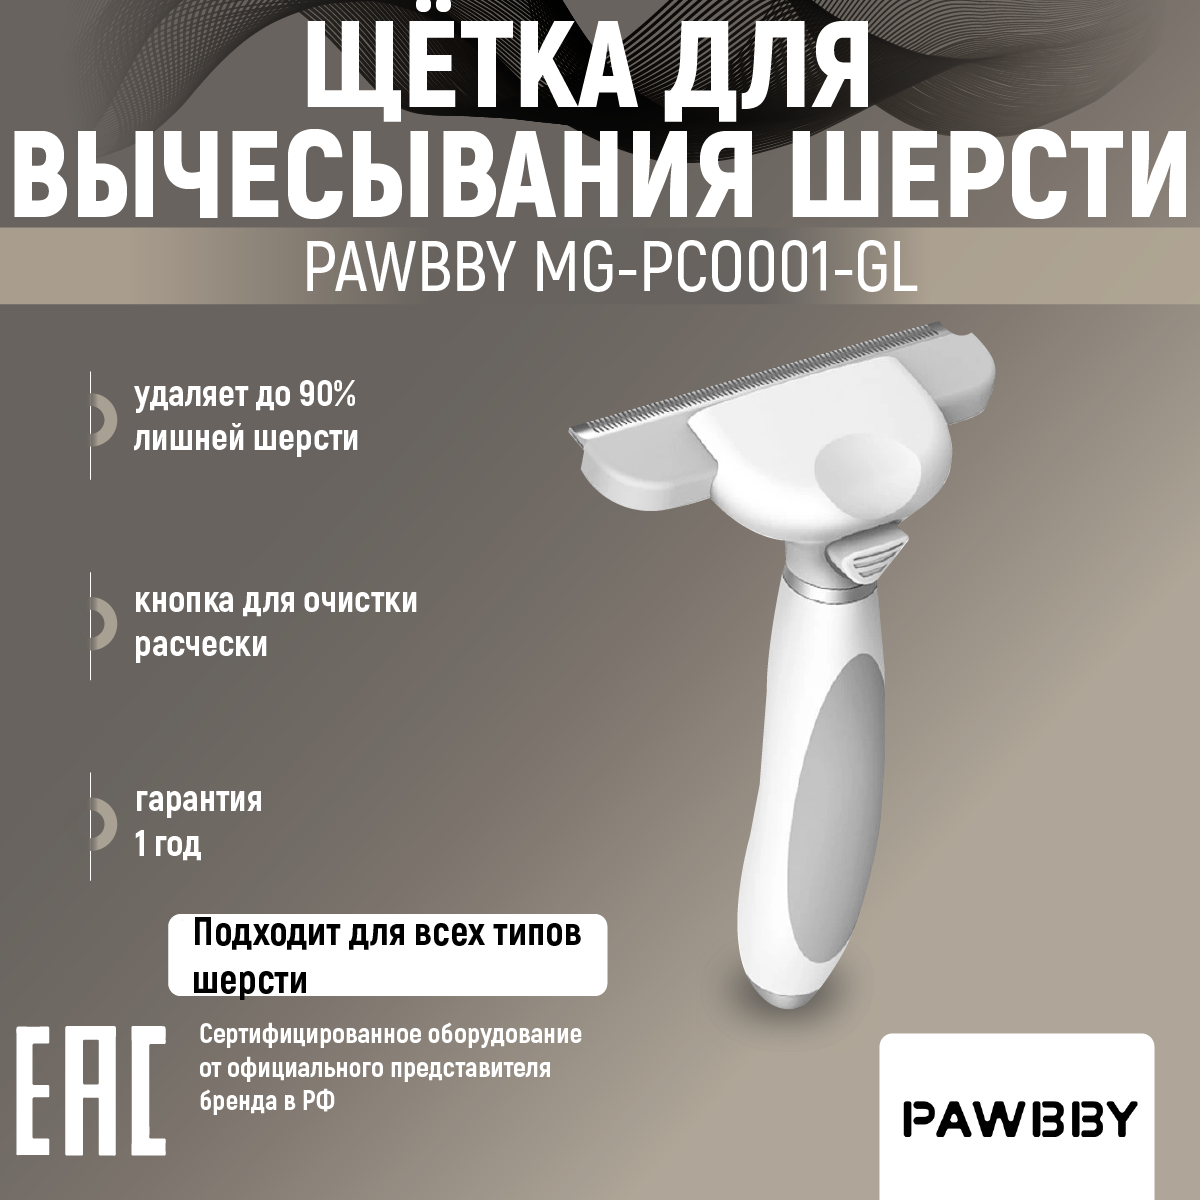 Массажная щетка Pawbby Pawbby MG-PCO001, белый